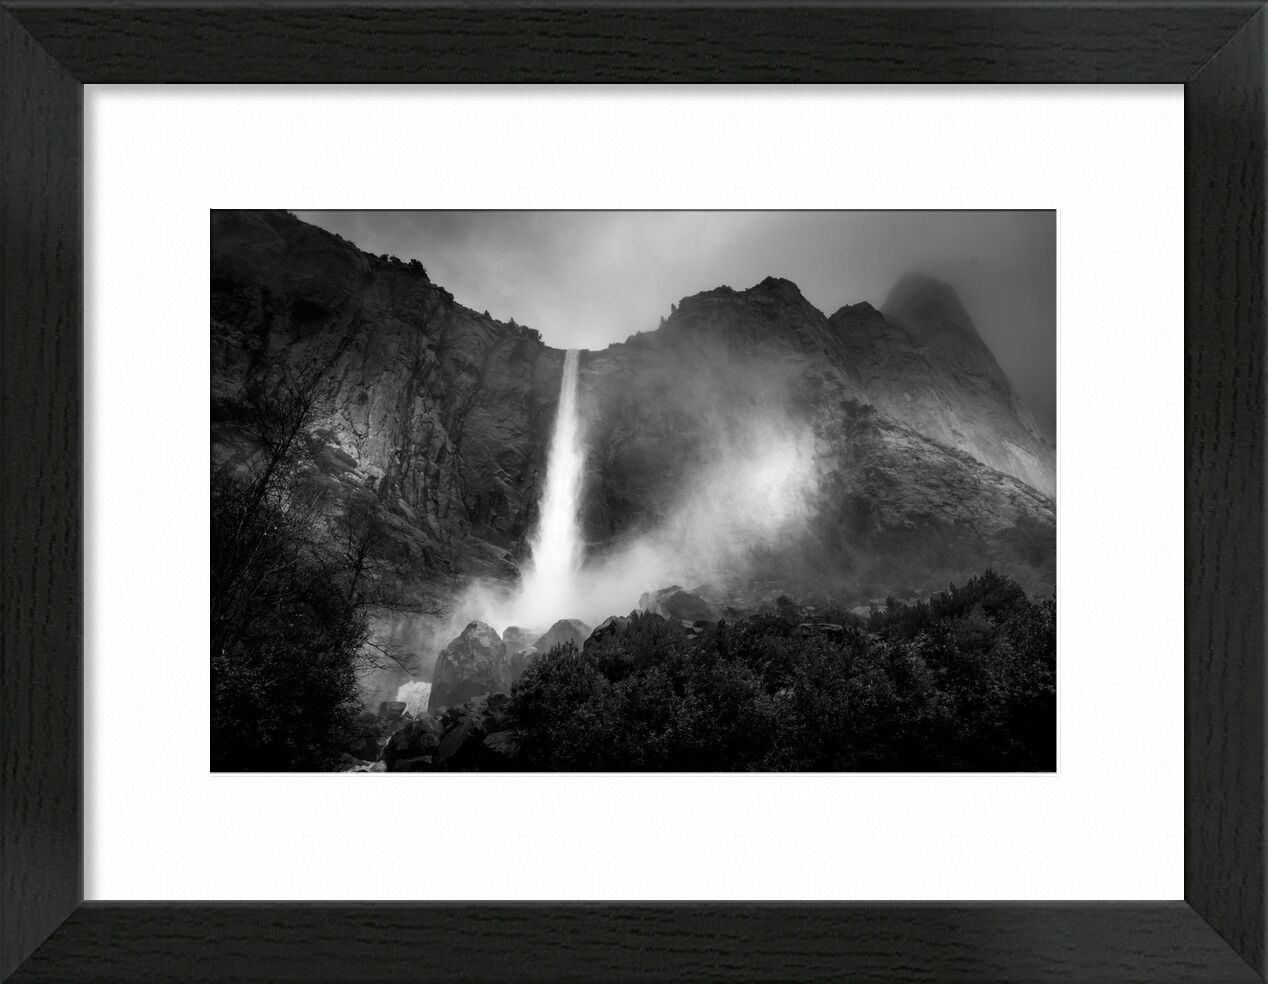 The fountain, New Mexico - ANSEL ADAMS 1956 desde Bellas artes, Prodi Art, montañas, blanco y negro, árbol, bosque, cielo, lluvia, ANSEL ADAMS, fuente